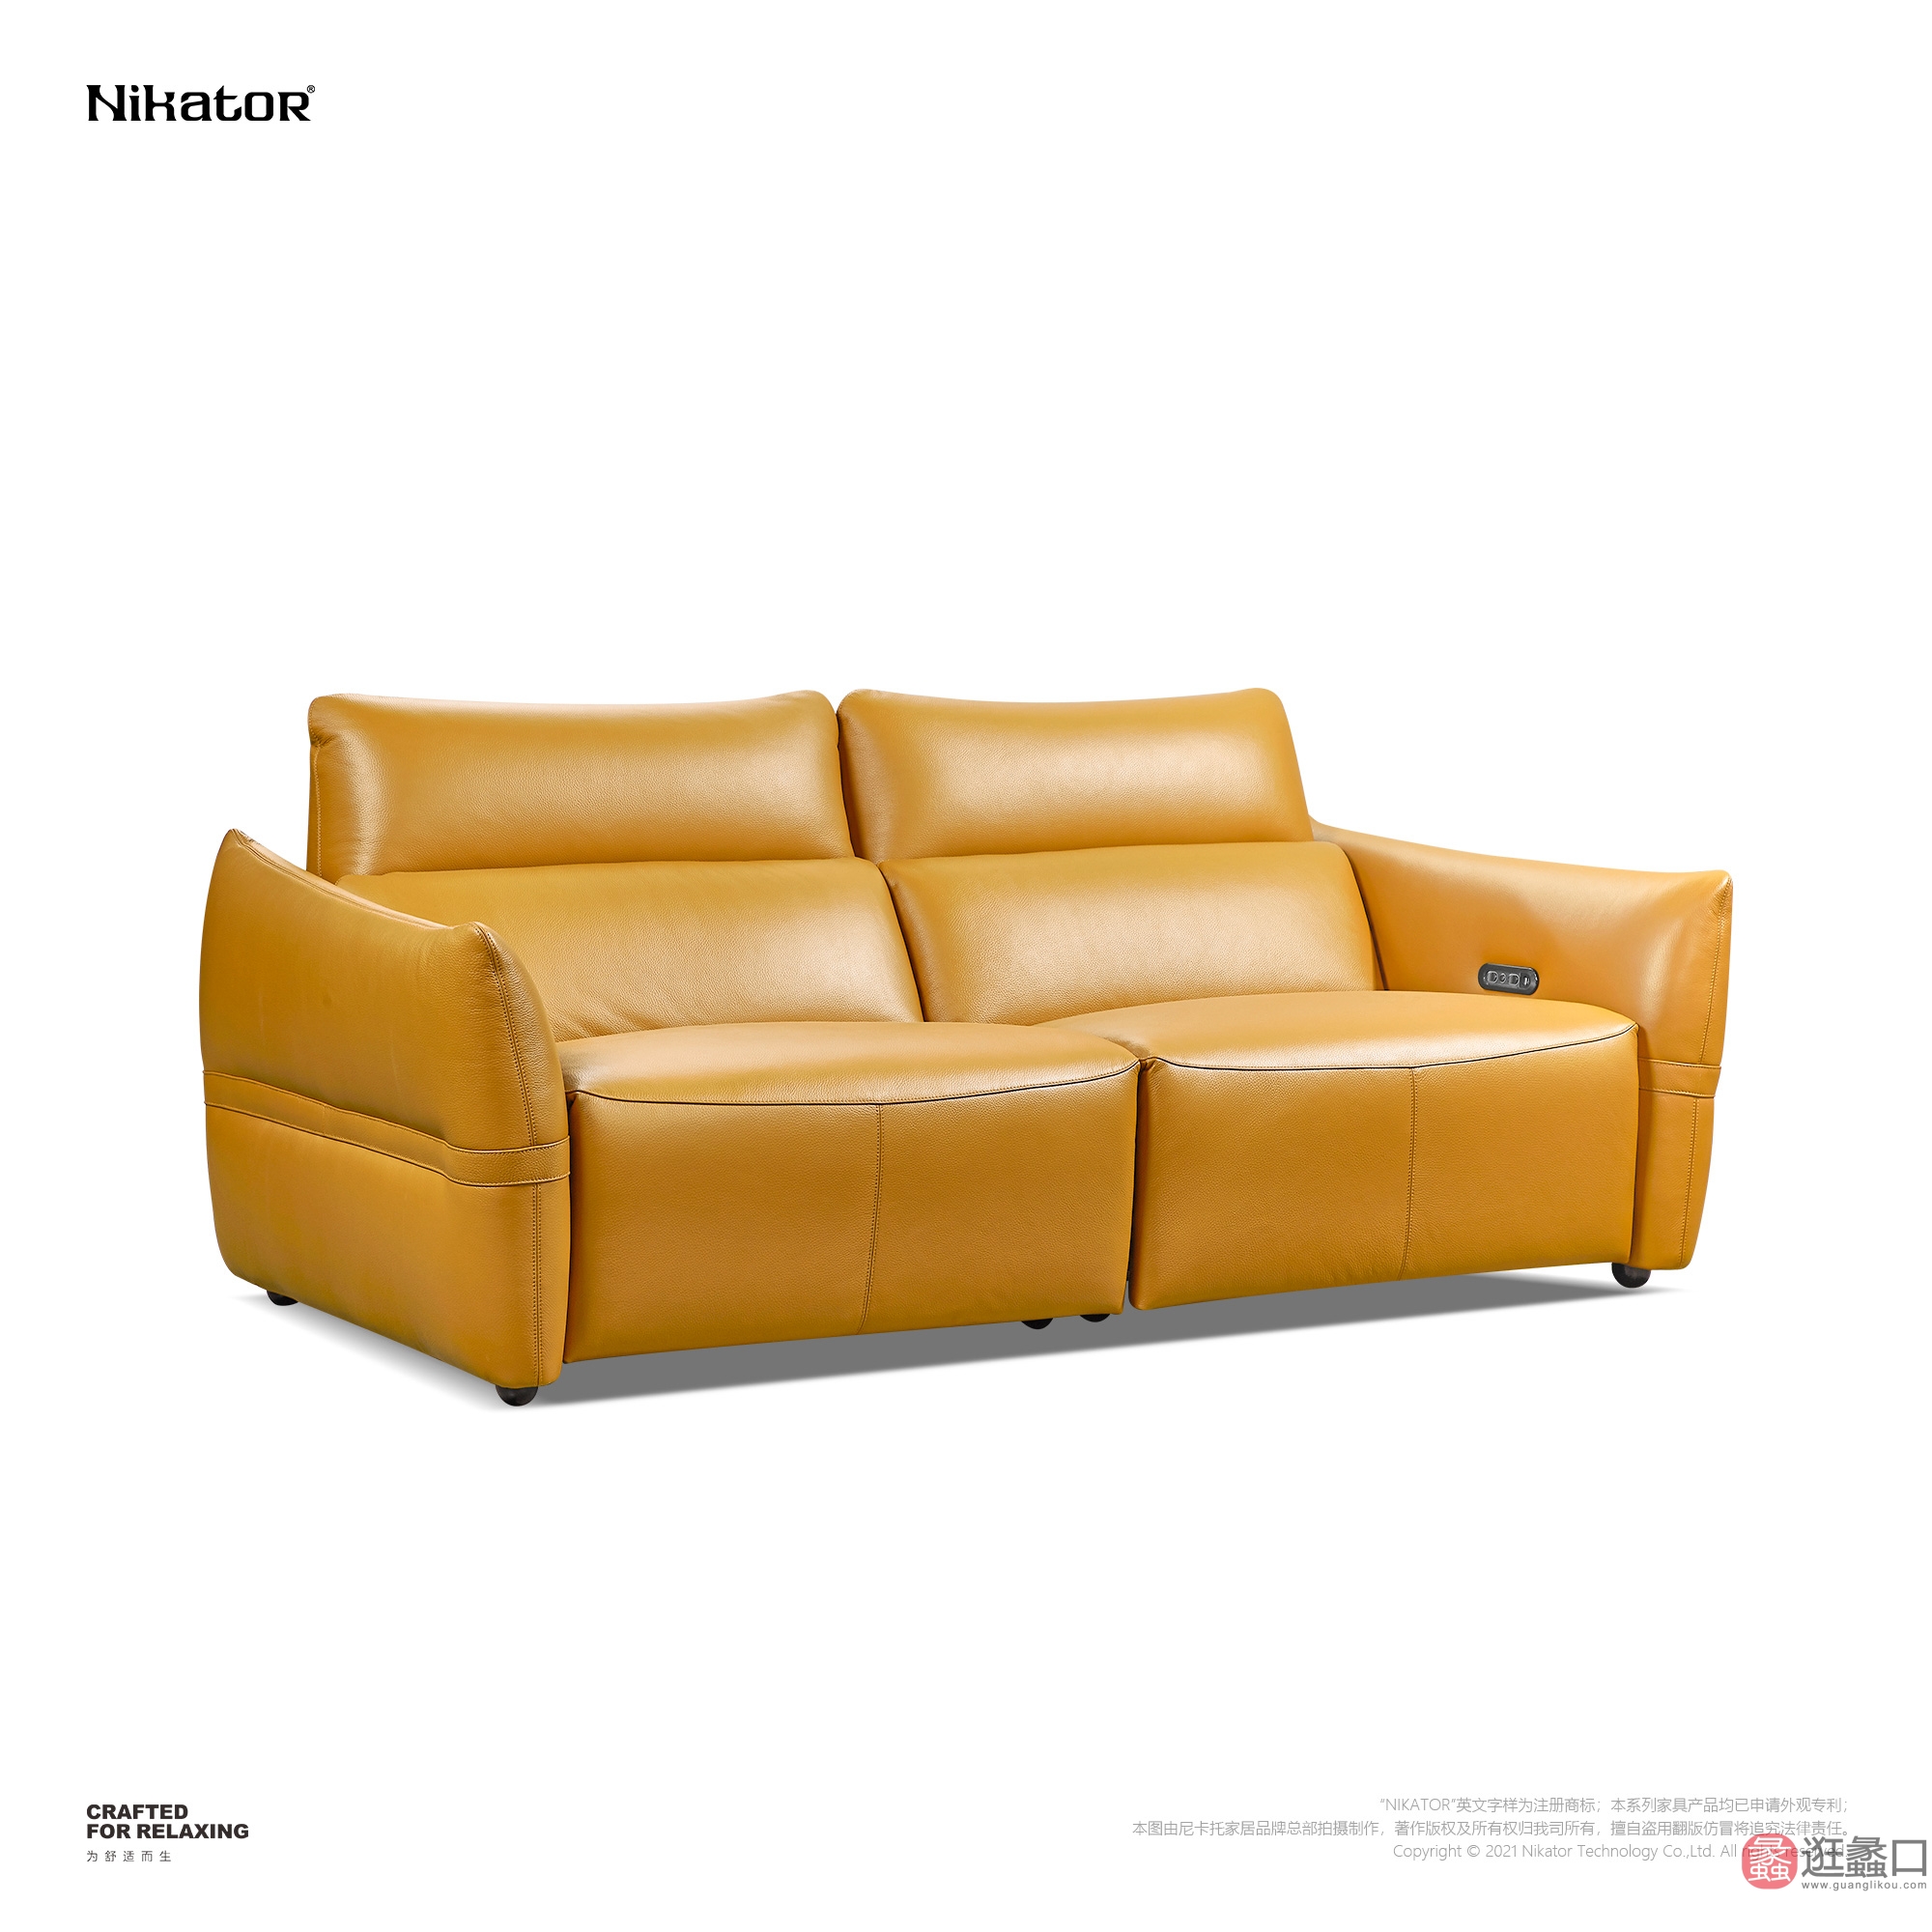 NIKATOR｜尼卡托家具客厅现代简约真皮沙发两人位直排沙发黄色设计师款NIKATOR004